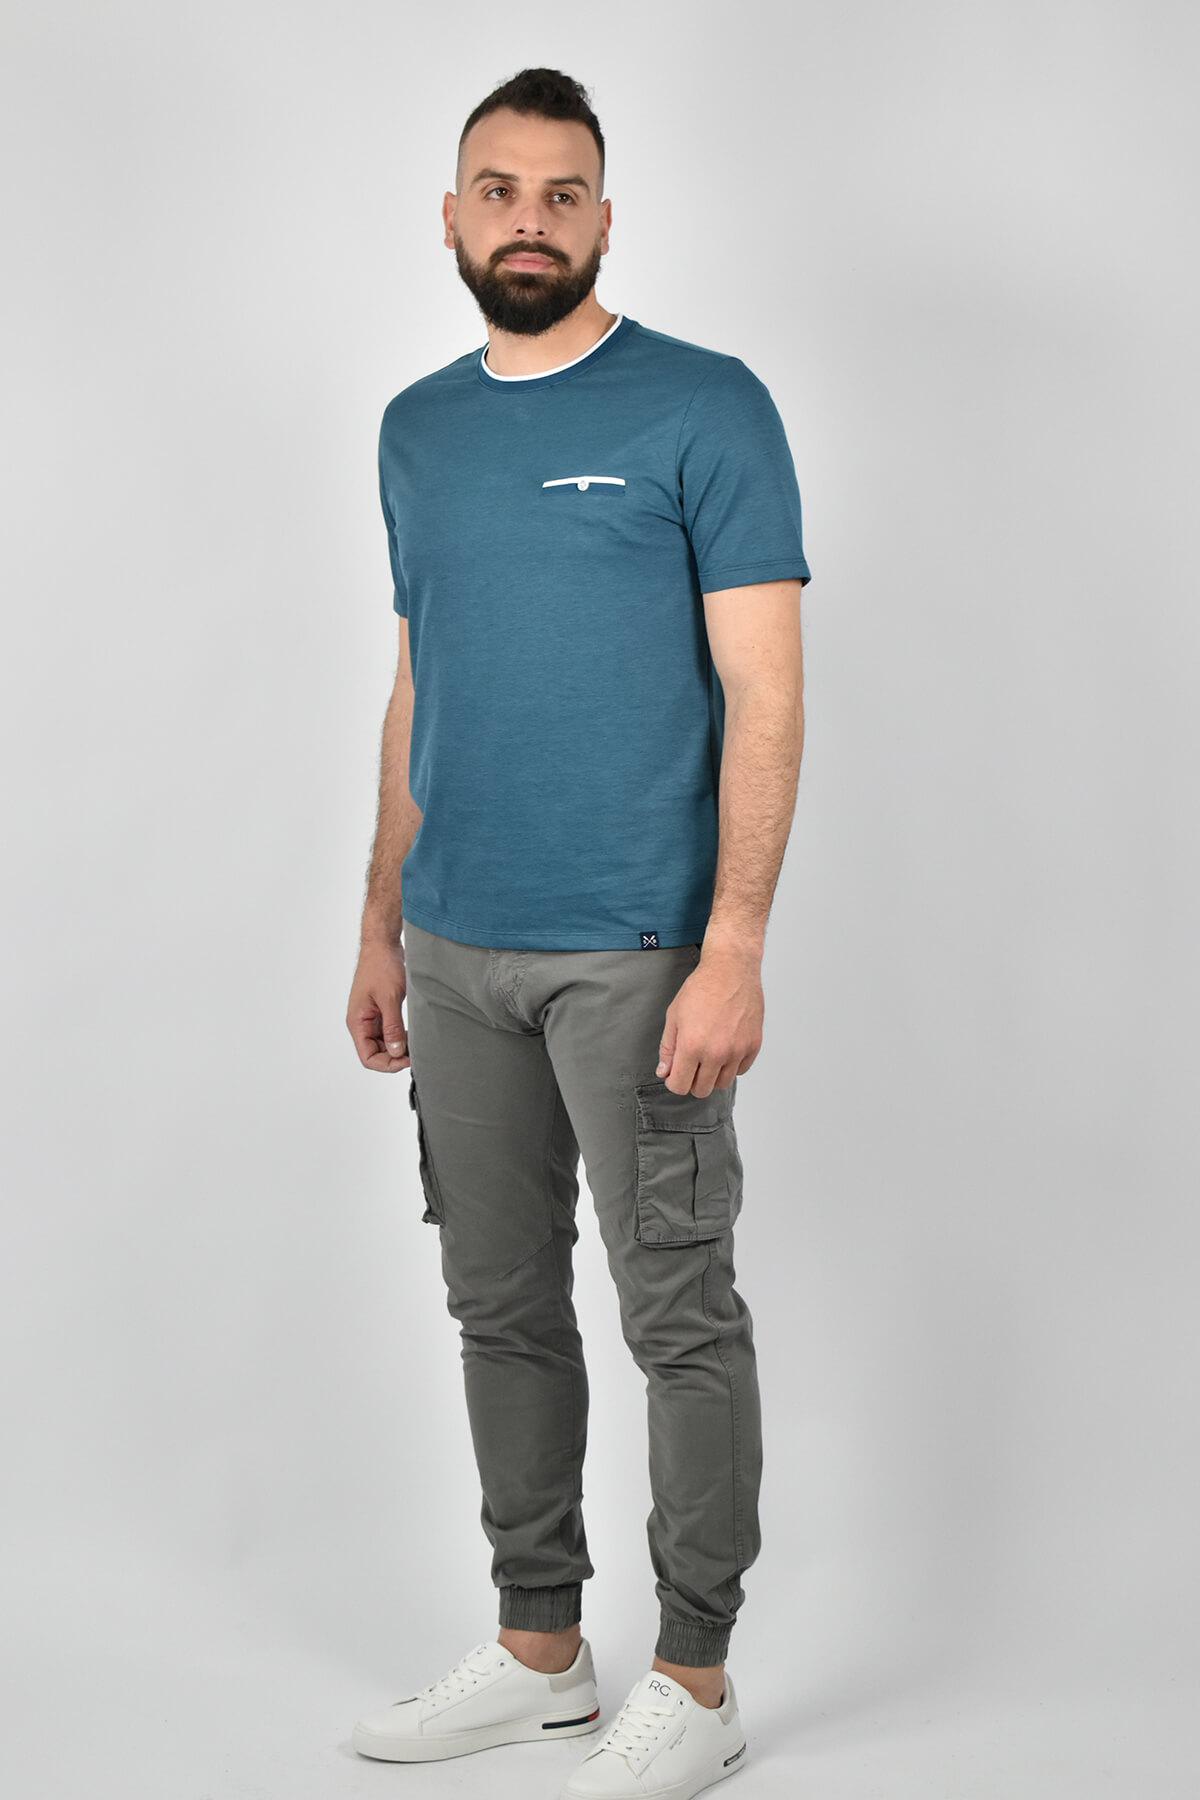 Shutton Blue T-shirt Με Δίχρωμη Τσέπη